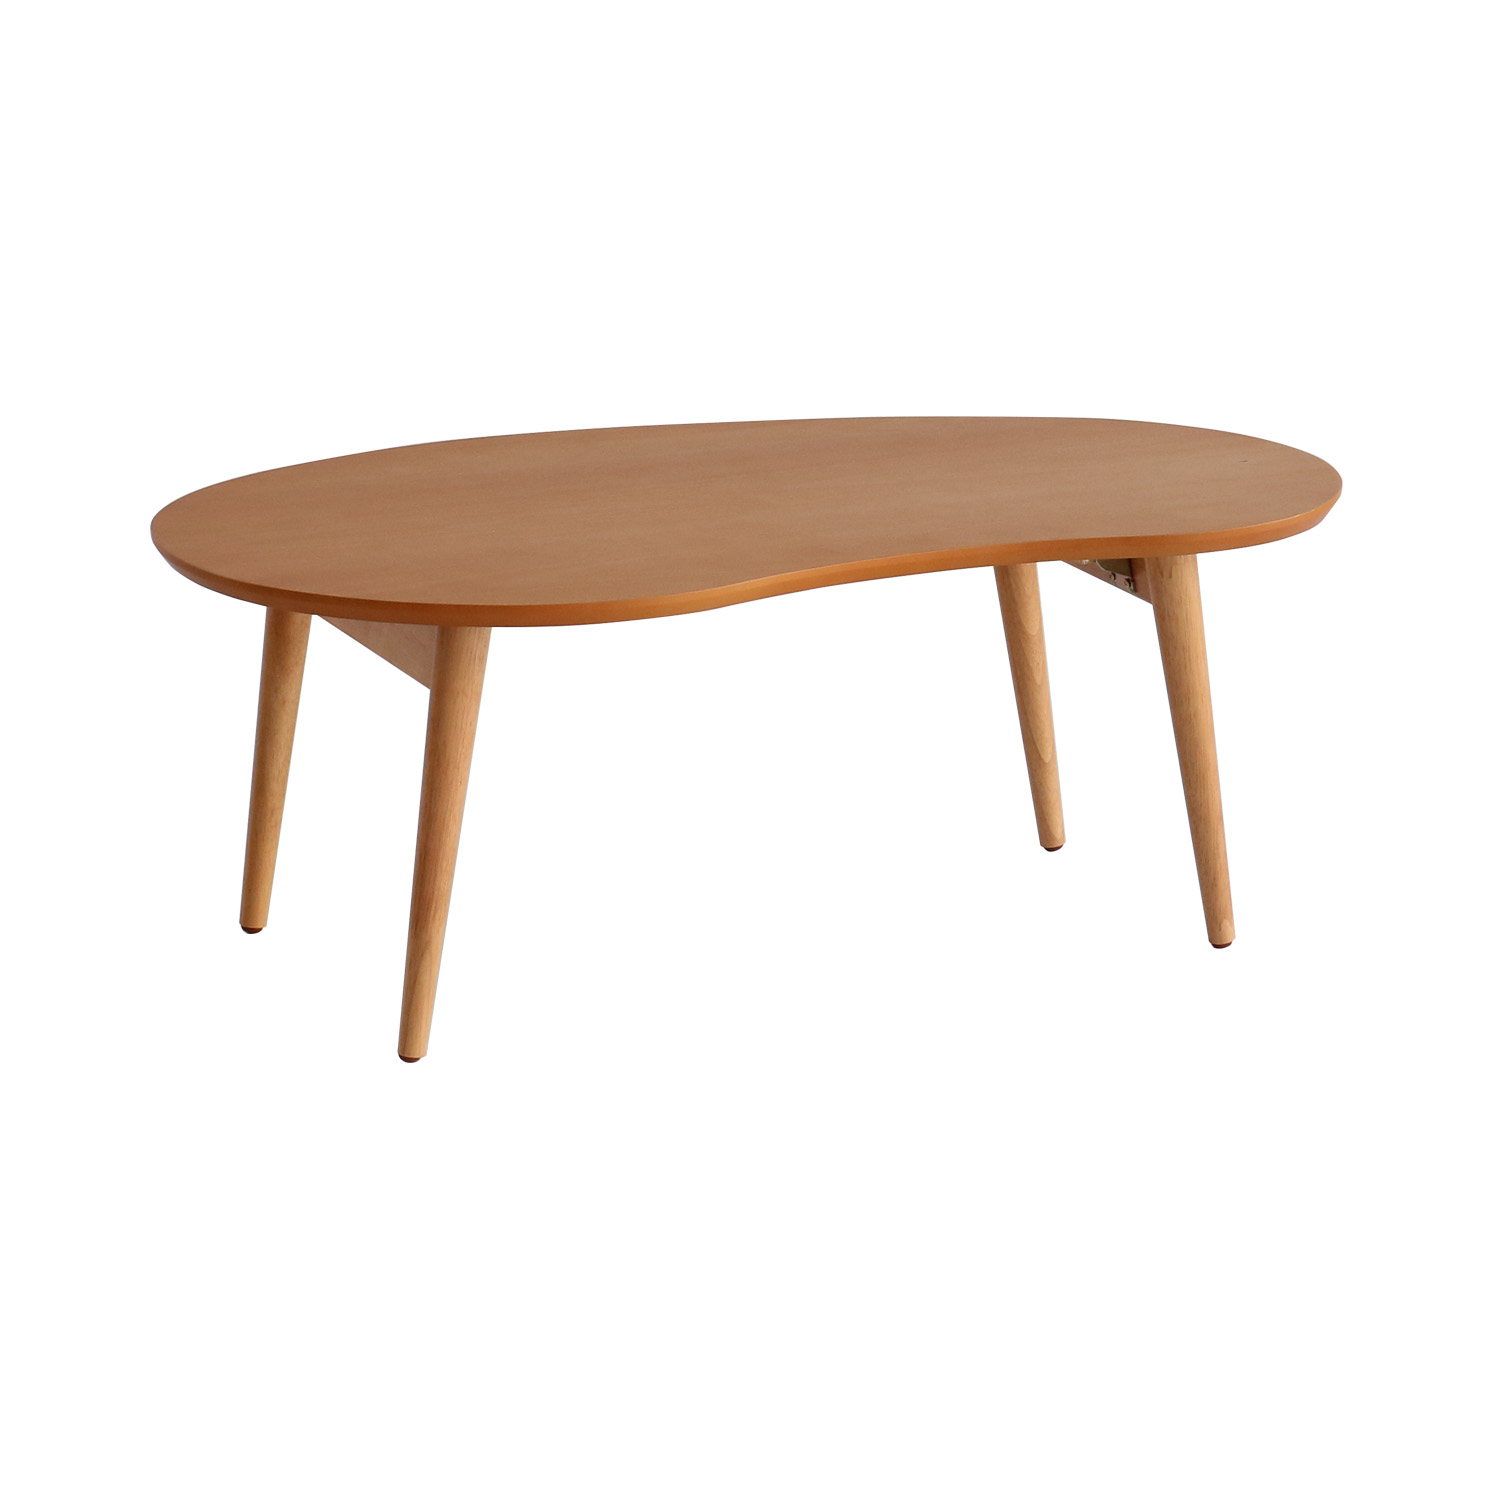 ローテーブル ちゃぶ台 座卓 折りたたみテーブル センターテーブル 円卓 リビングテーブル 丸 80cm テーブル ビーン型 木製 円形 T-2586